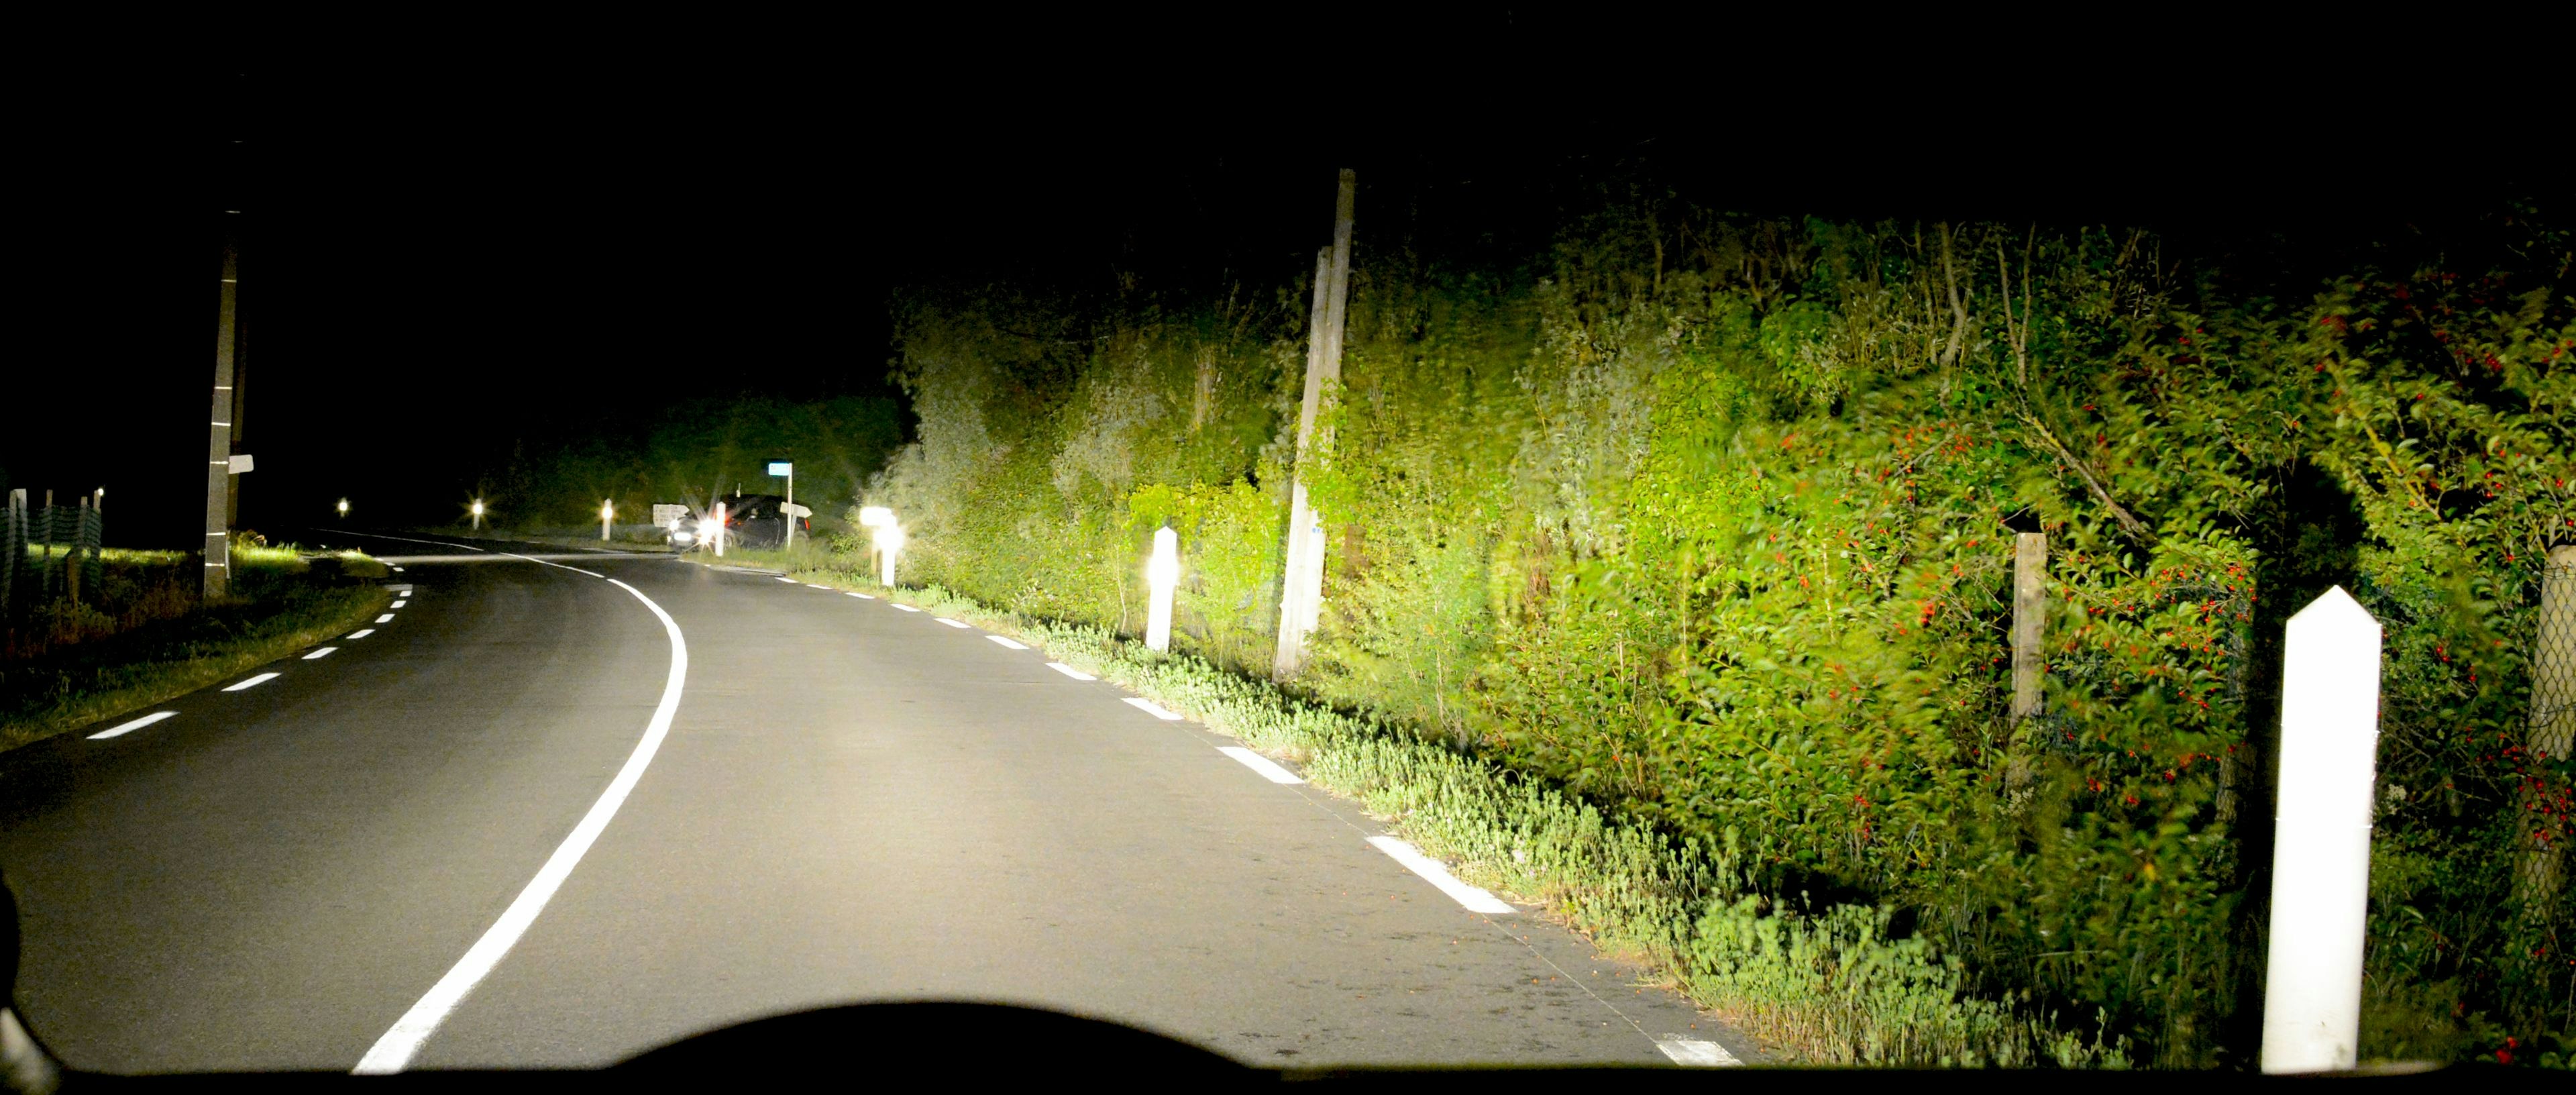 Route de nuit - La cibi, le 1er antiradar légal